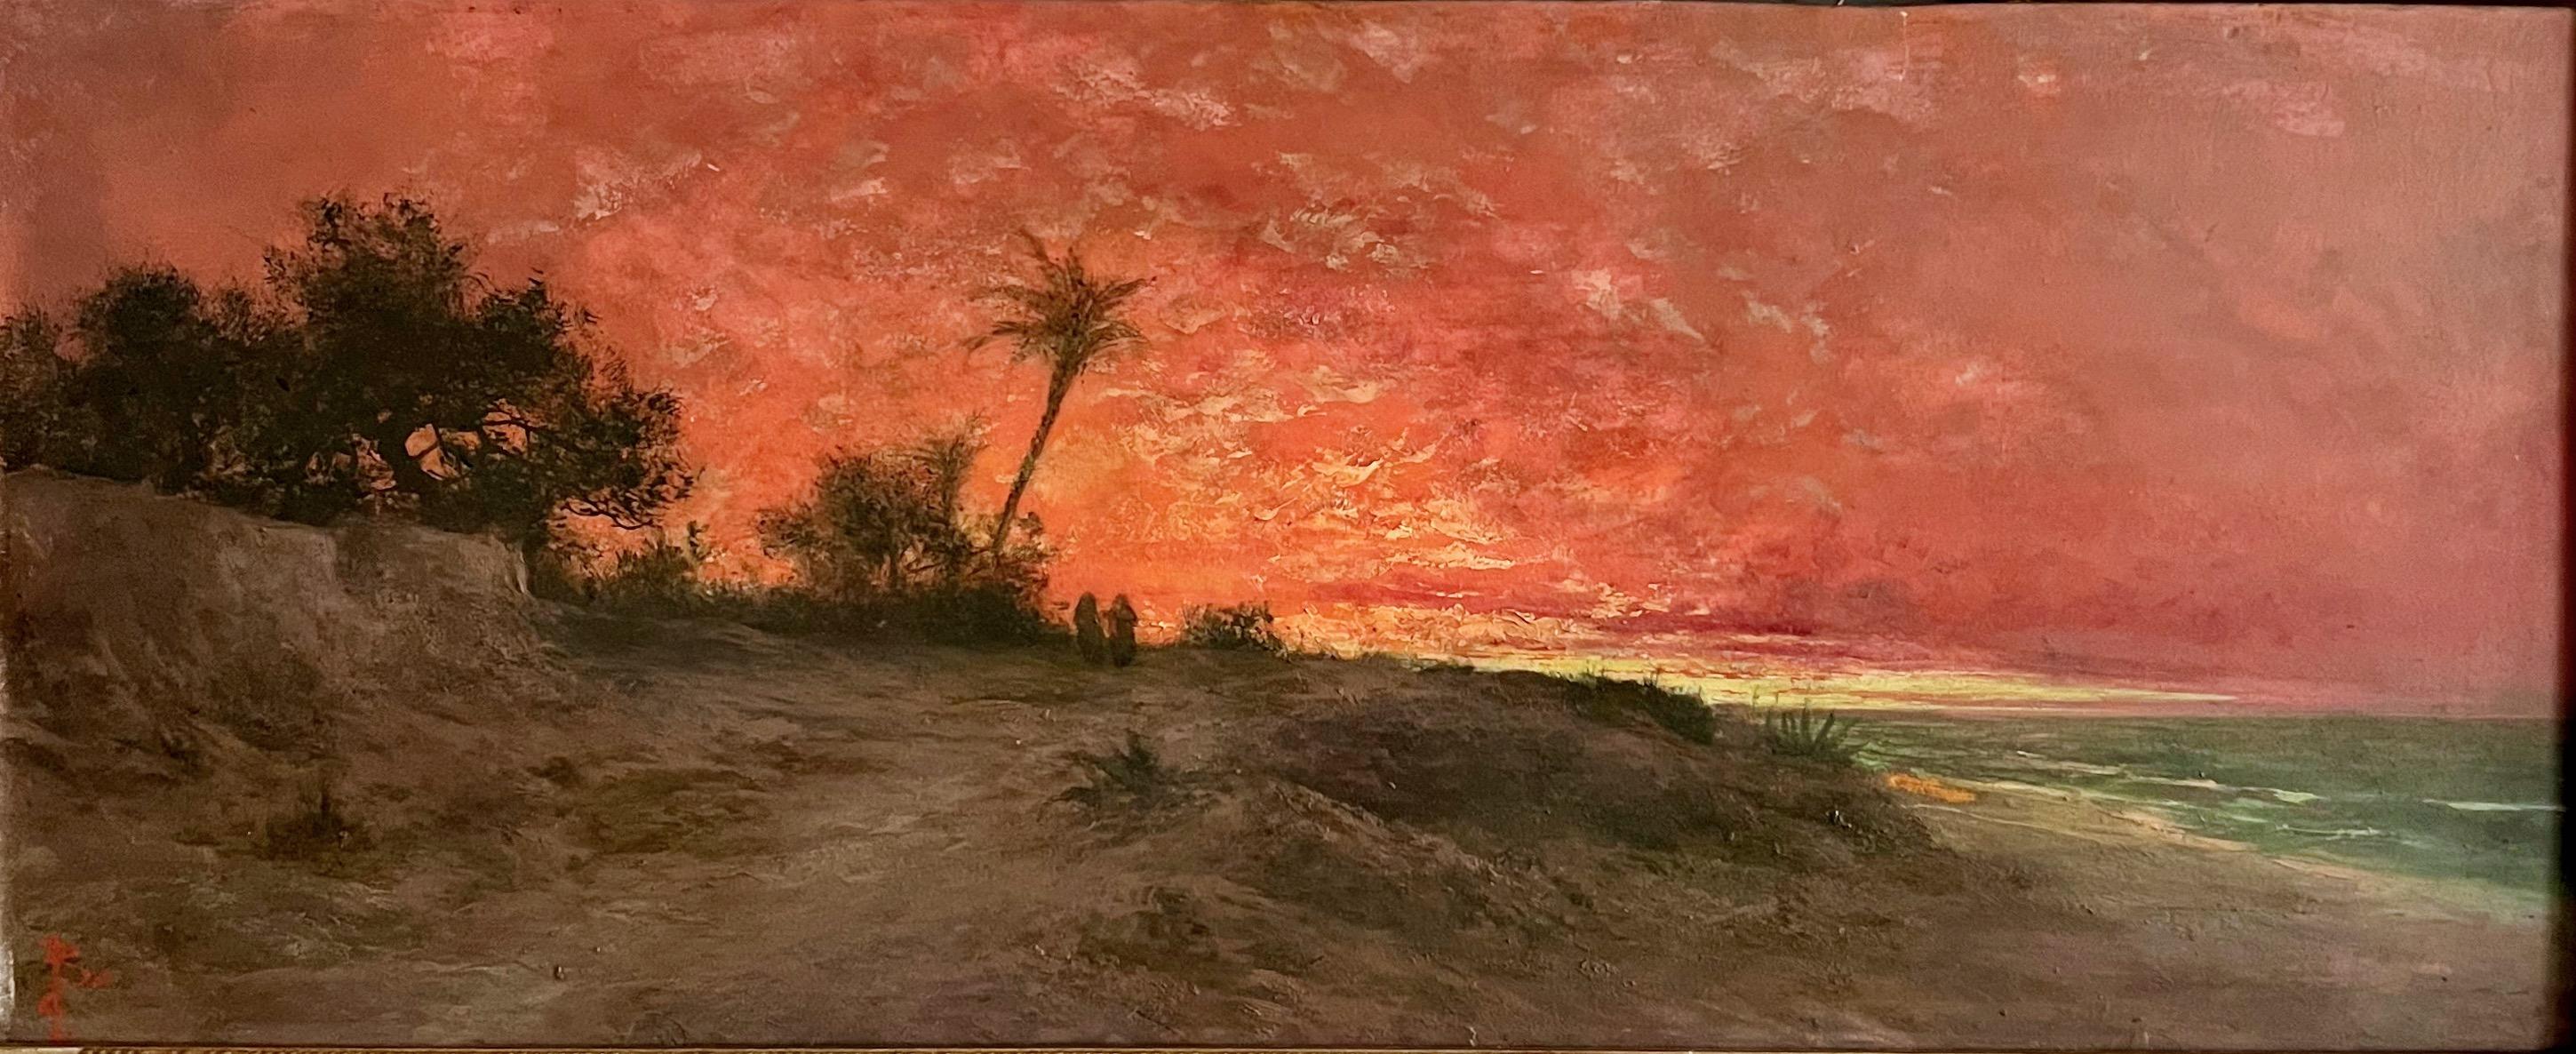 Sunset dans un paysage oriental en bord de mer. 